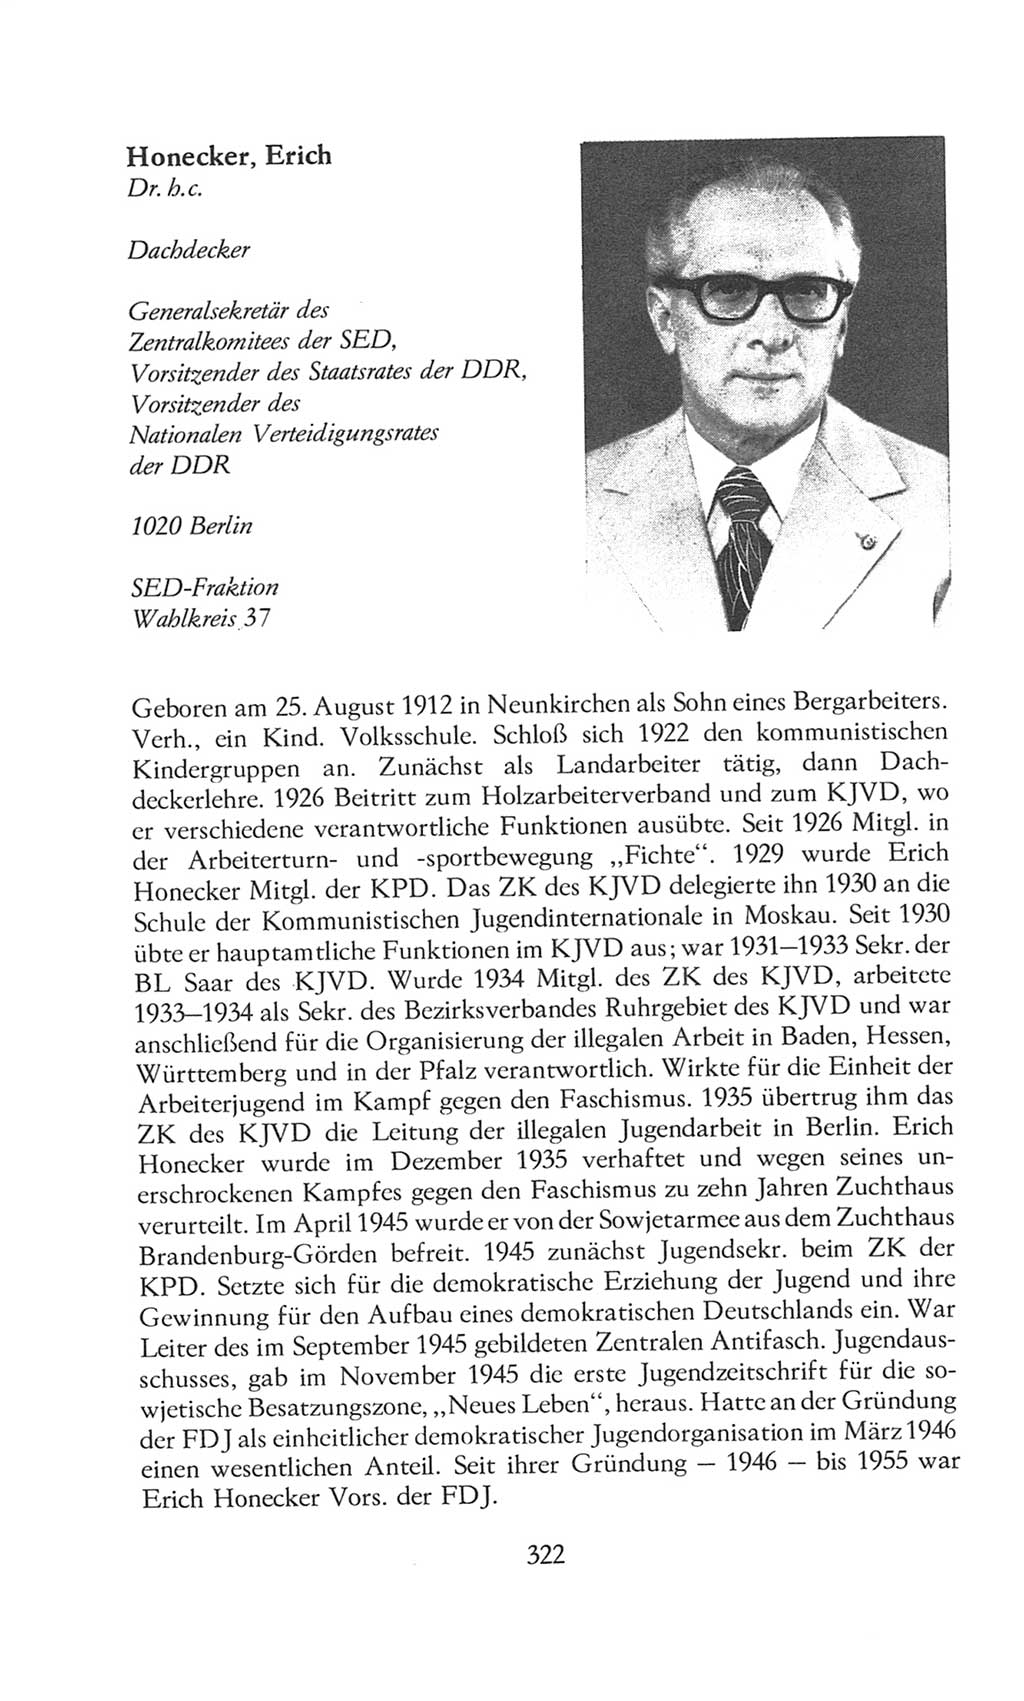 Volkskammer (VK) der Deutschen Demokratischen Republik (DDR), 8. Wahlperiode 1981-1986, Seite 322 (VK. DDR 8. WP. 1981-1986, S. 322)